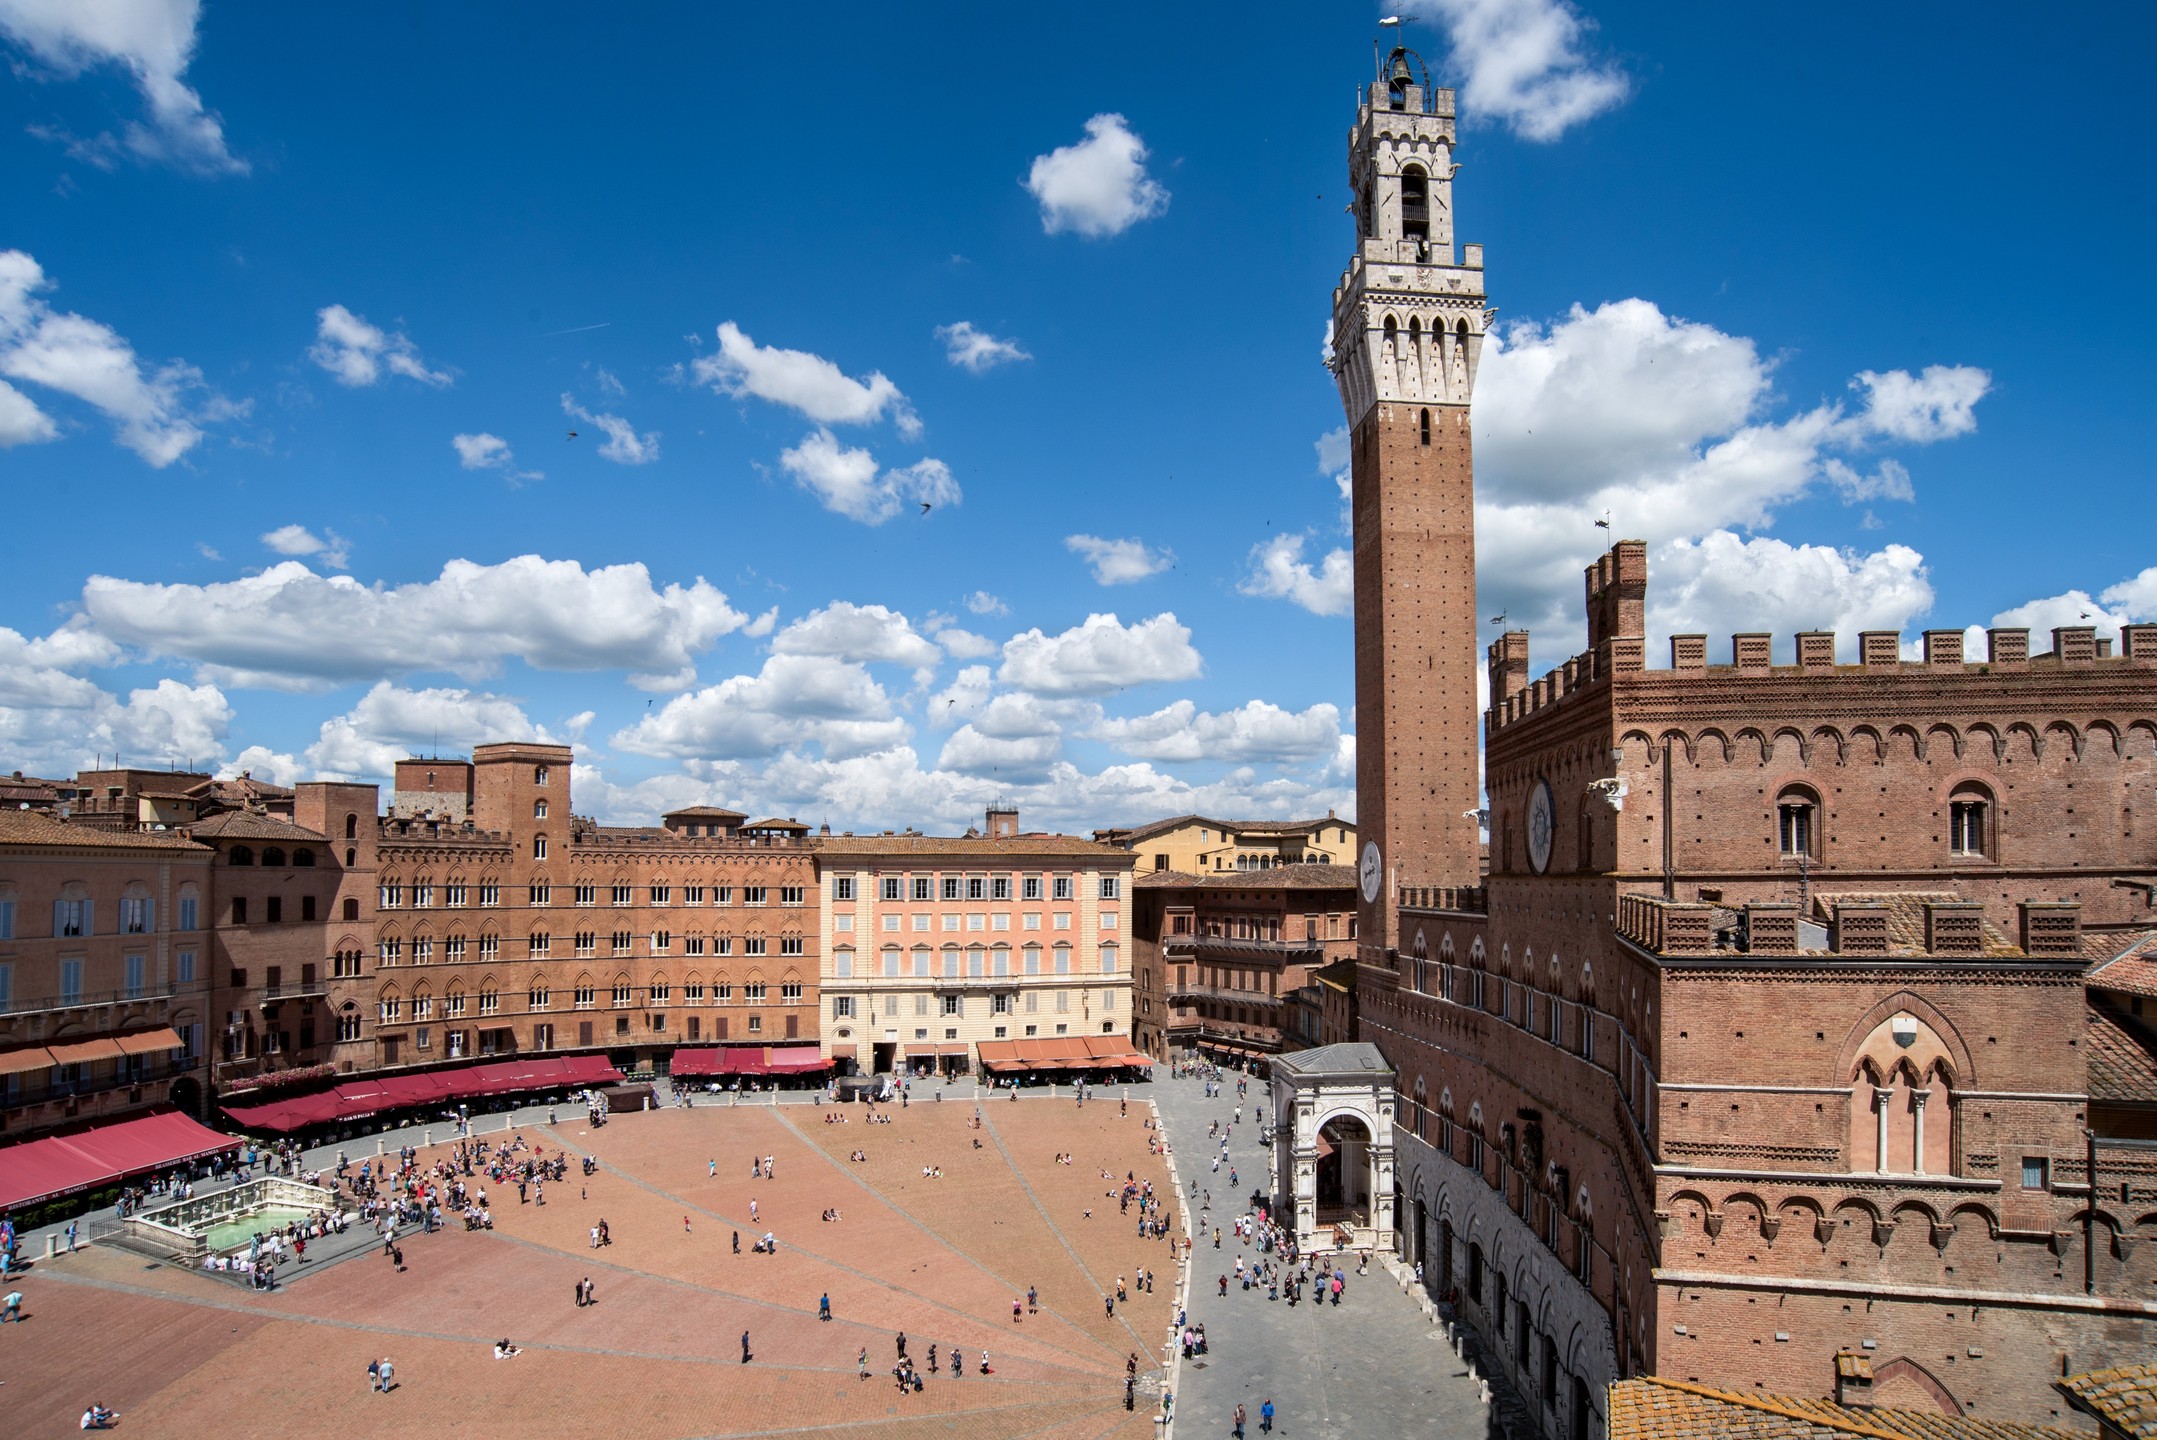 Đắm chìm trong thế giới cổ tích lãng mạn Siena